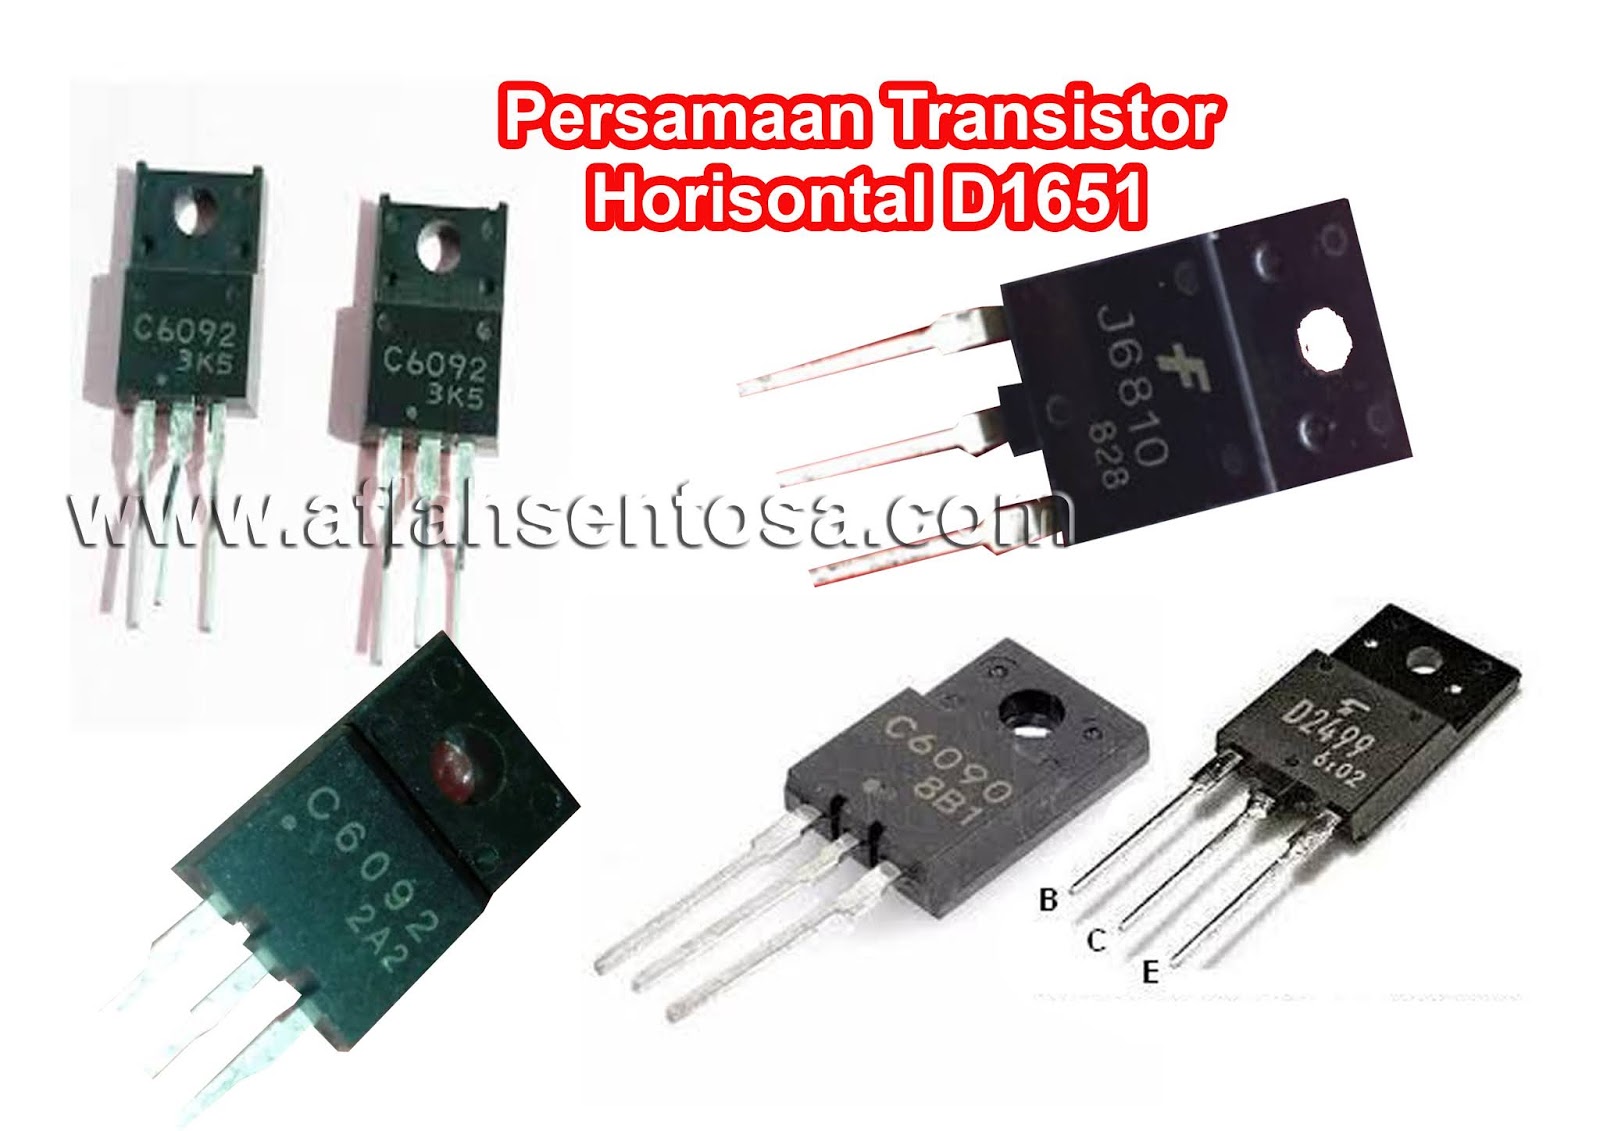 Persamaan Transistor Horisontal D1651 Aflah Sentosa